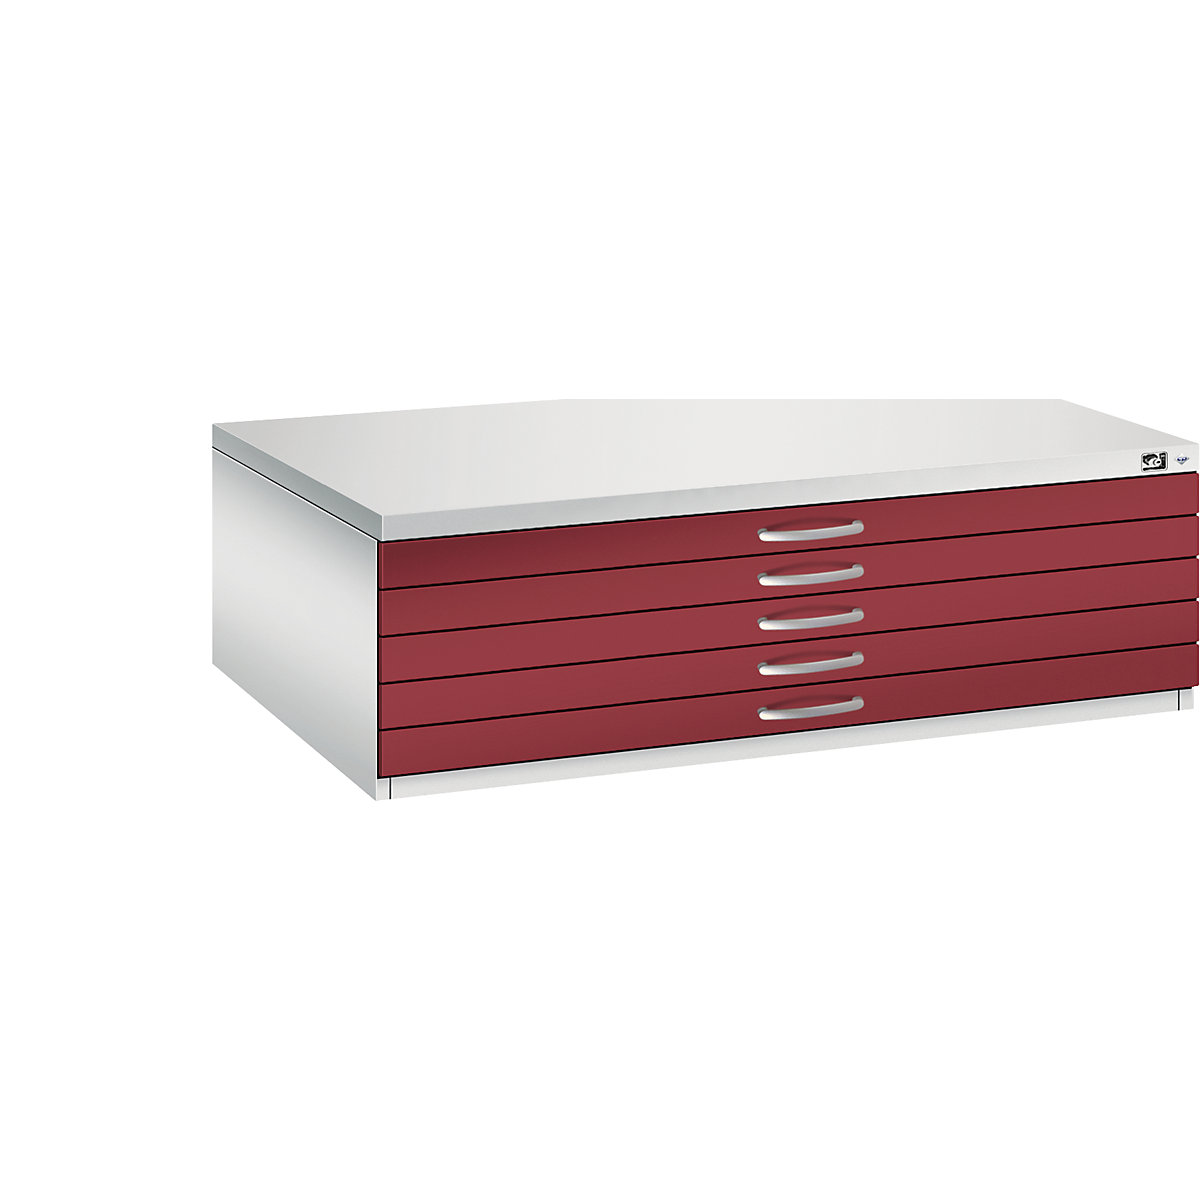 Archivio per disegni – C+P, UNI A0, 5 cassetti, altezza 420 mm, grigio chiaro / rosso rubino-21